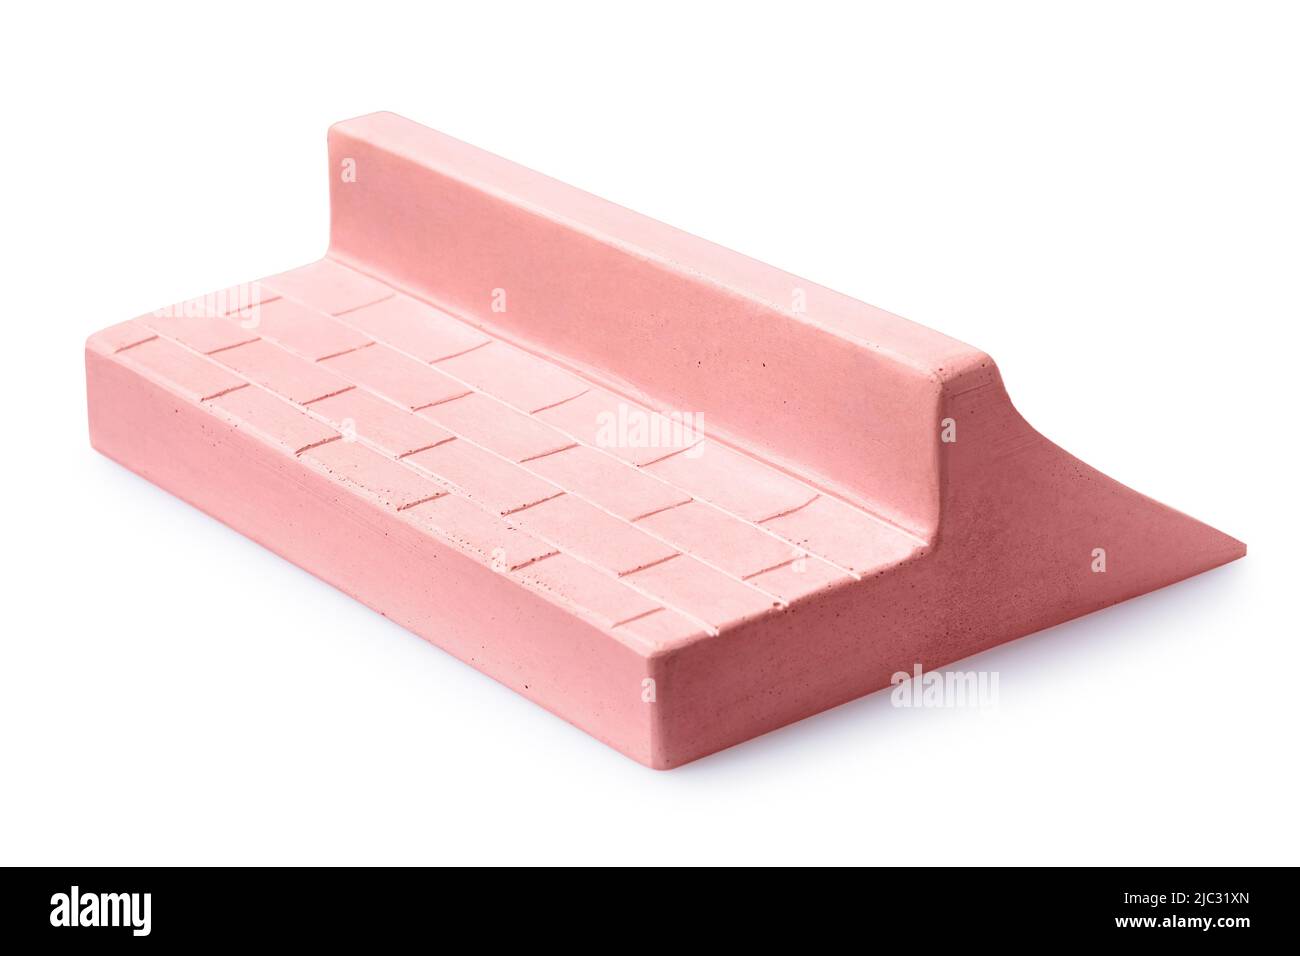 Rampa de yeso rosa con dos lados para fingerboarding, aislada sobre un fondo blanco Foto de stock